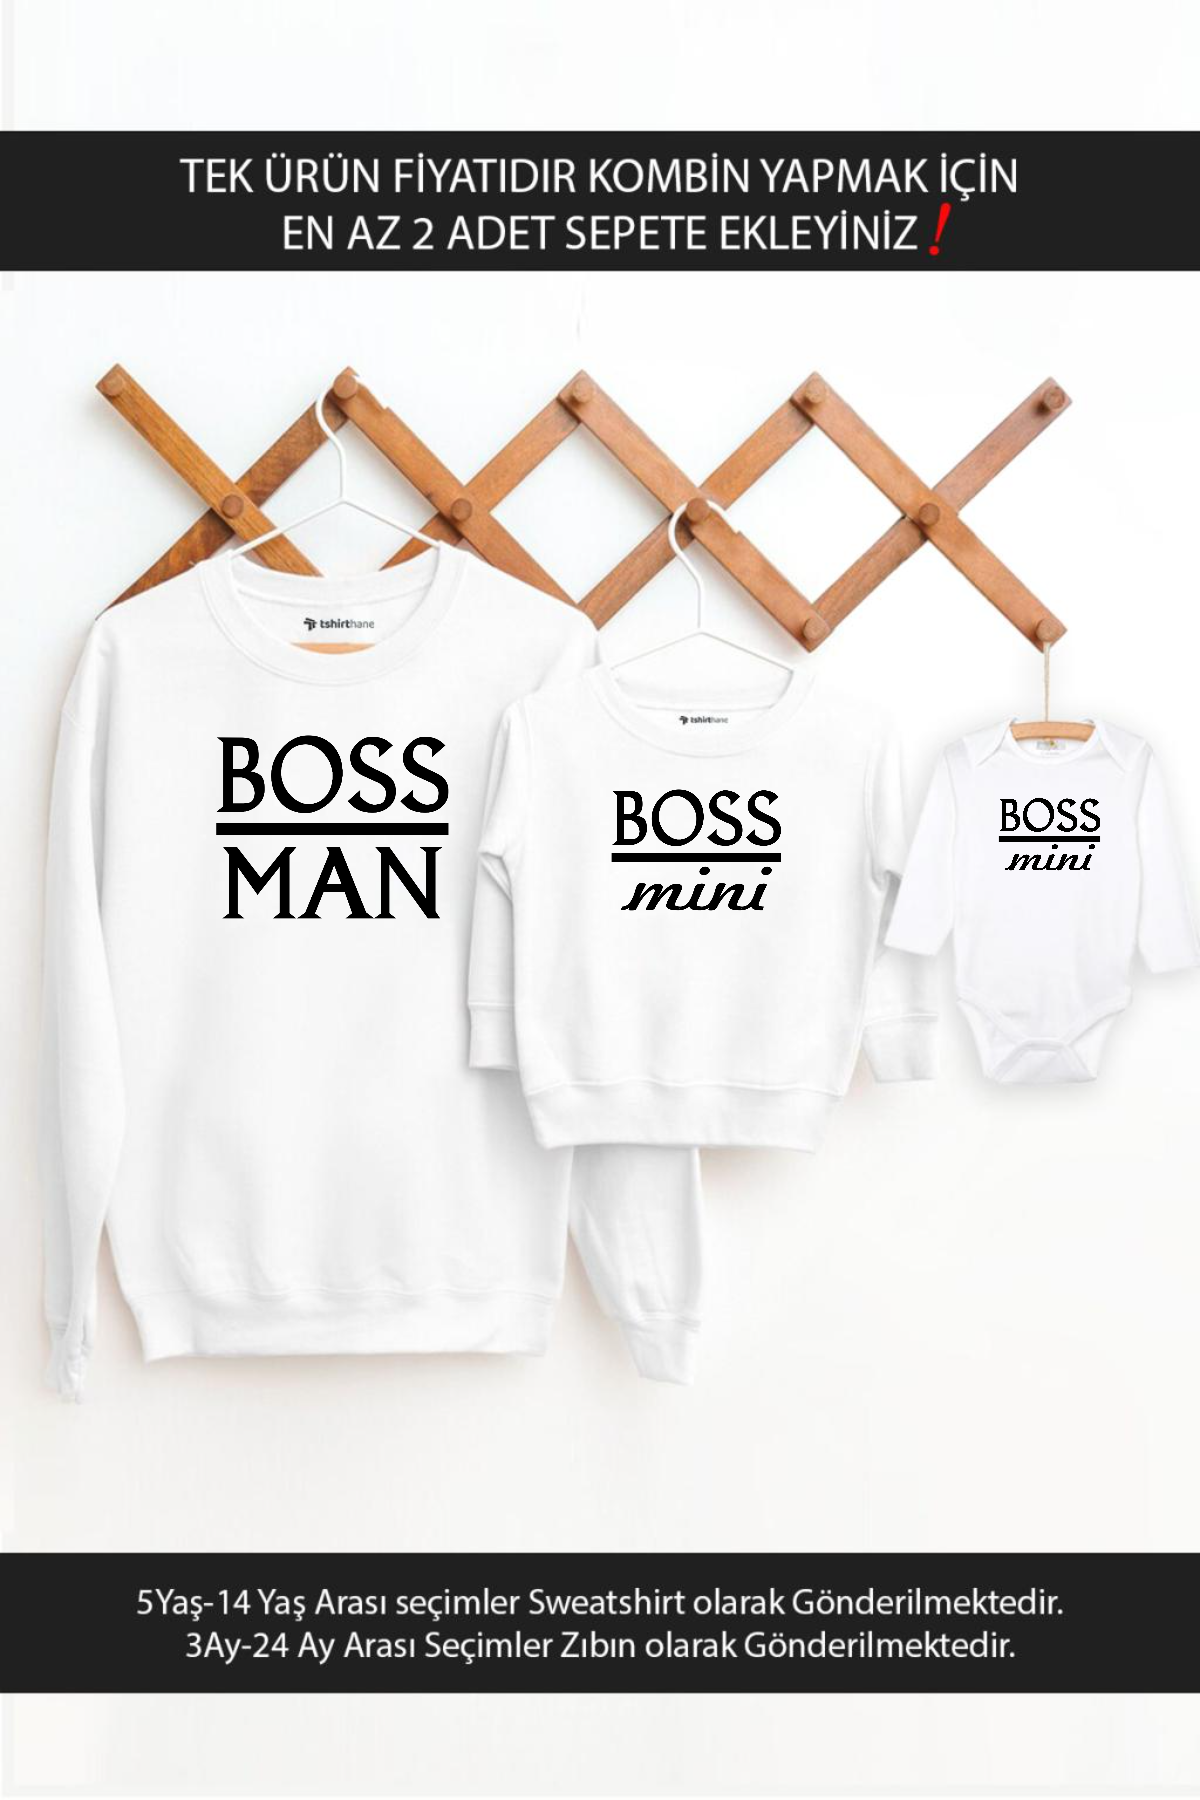 Boss Man Boss Mini Baba Oğul Kız(TEK ÜRÜN FİYATIDIR KOMBİN YAPMAK İÇİN EN AZ 2 ADET SEPETE EKLEYİNİZ